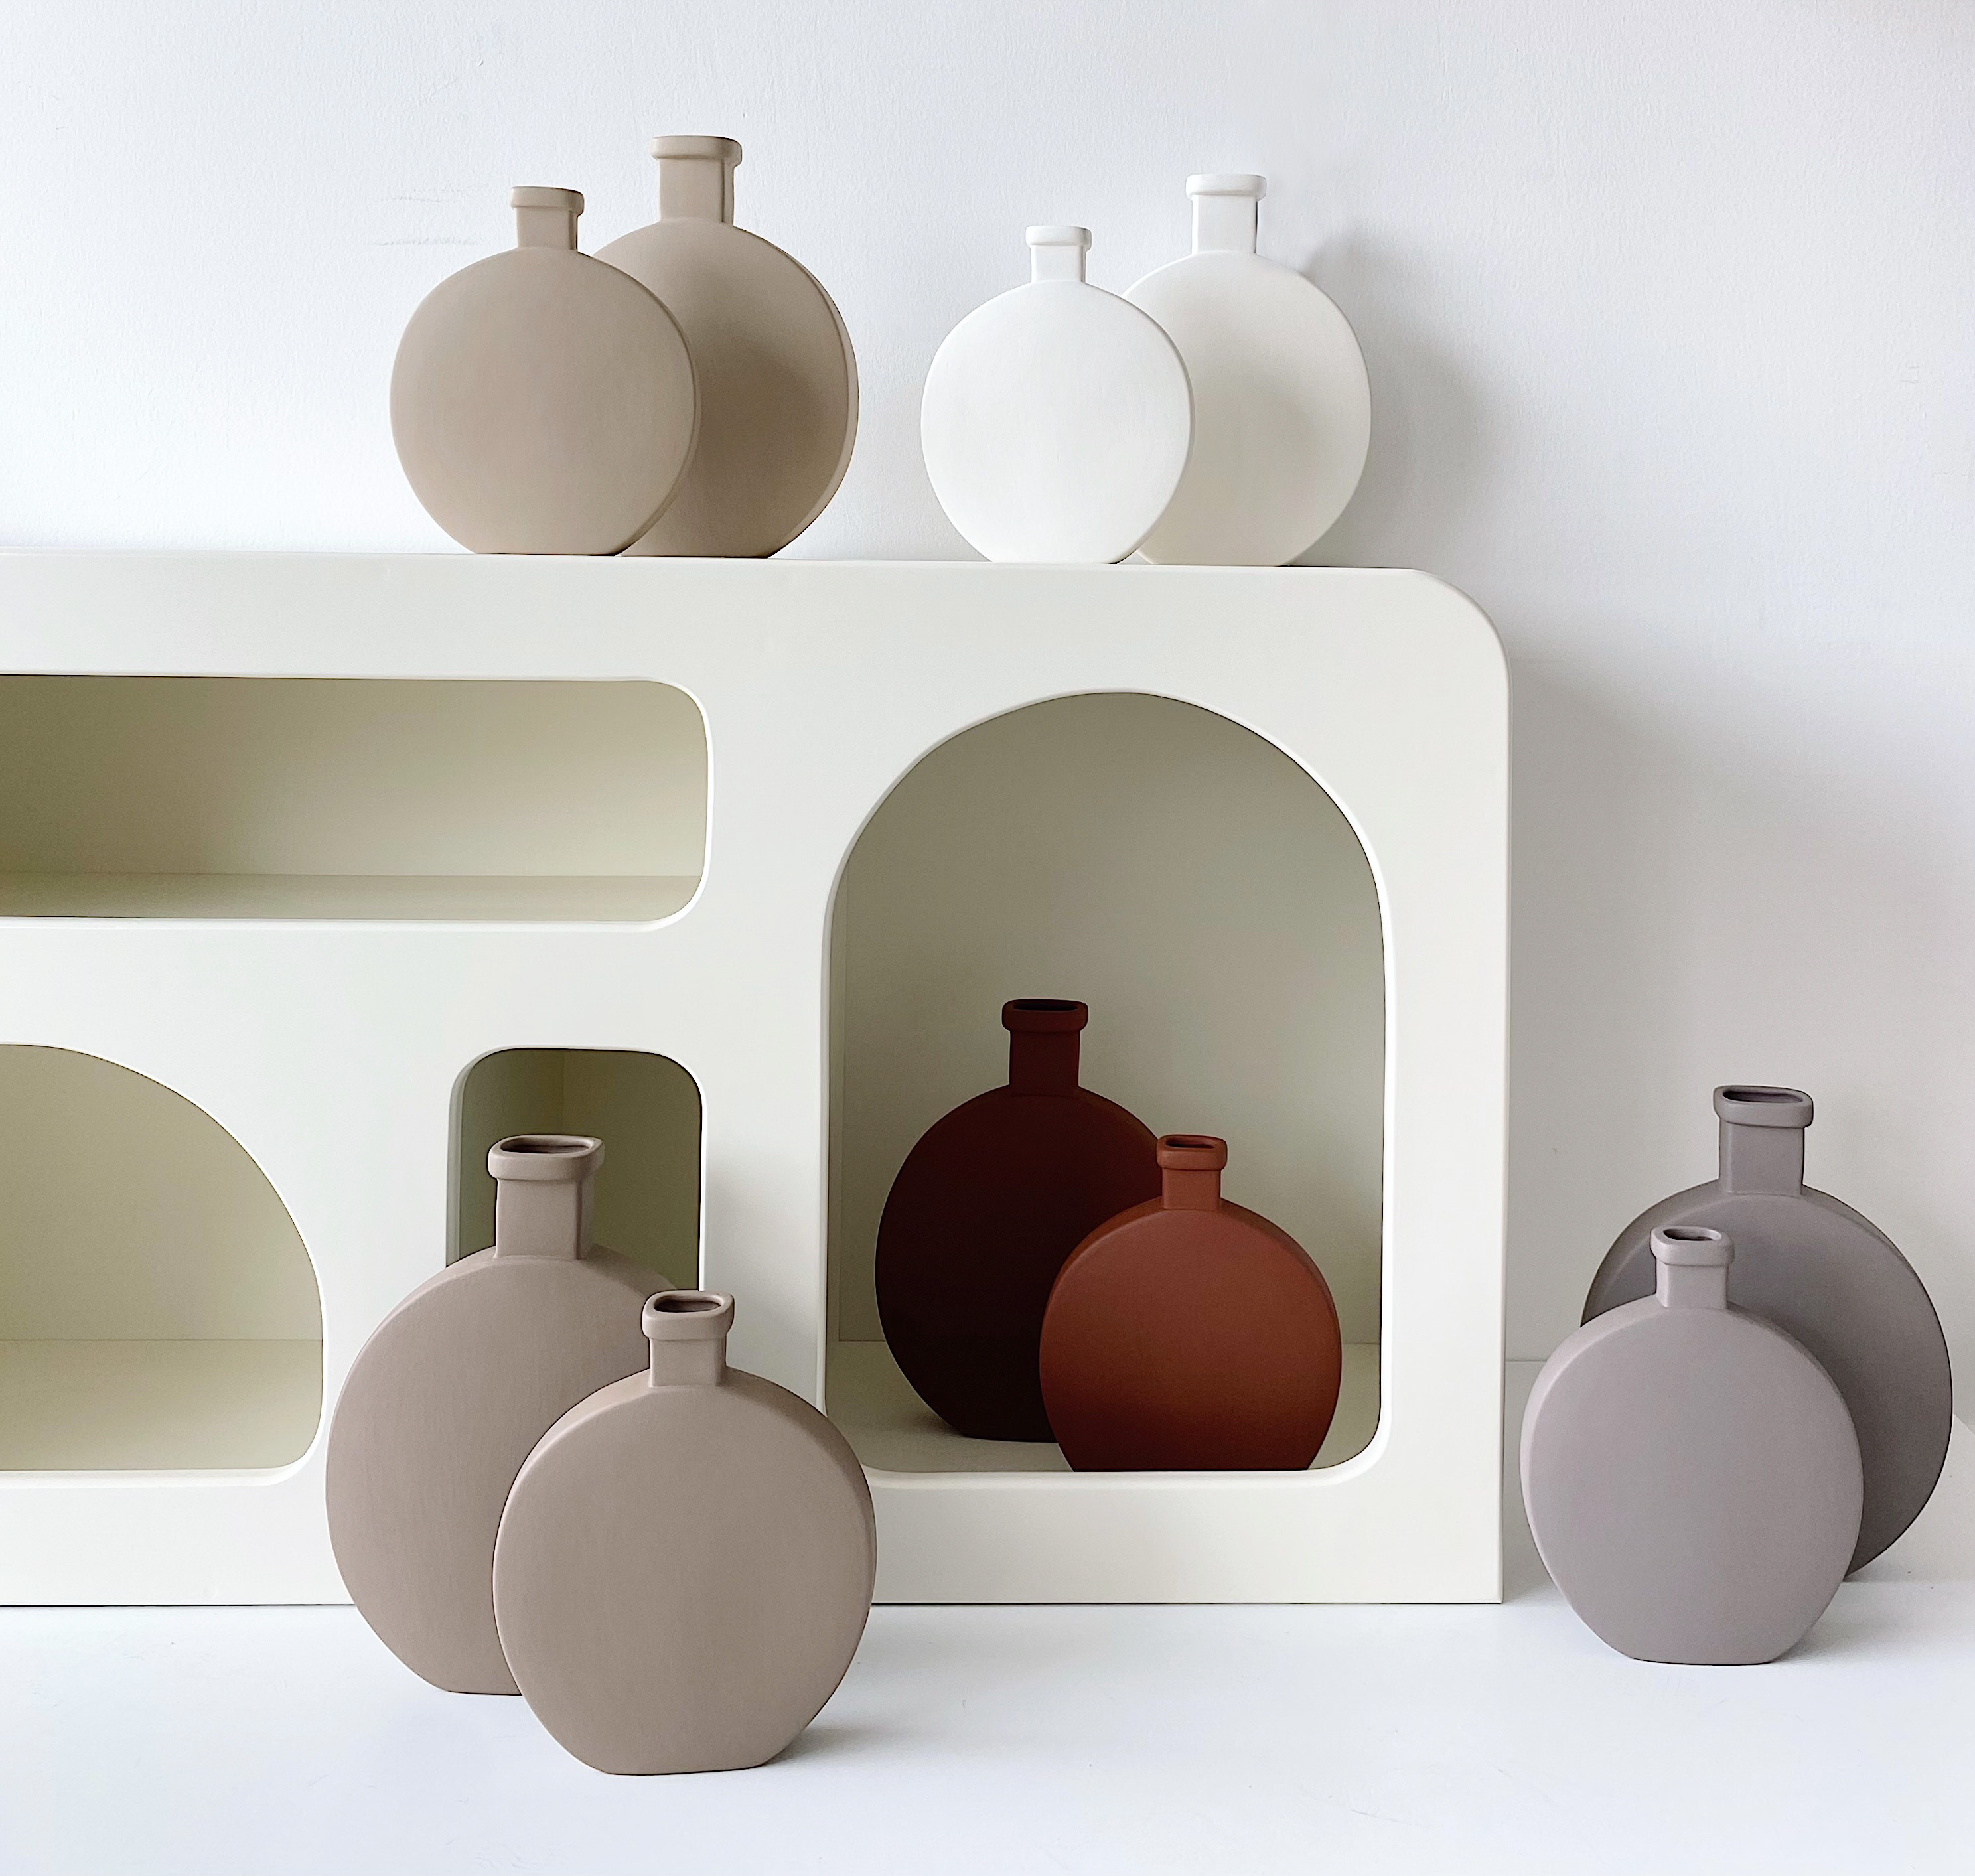 Matery 2 pcs Ceramic Vase Set Tile